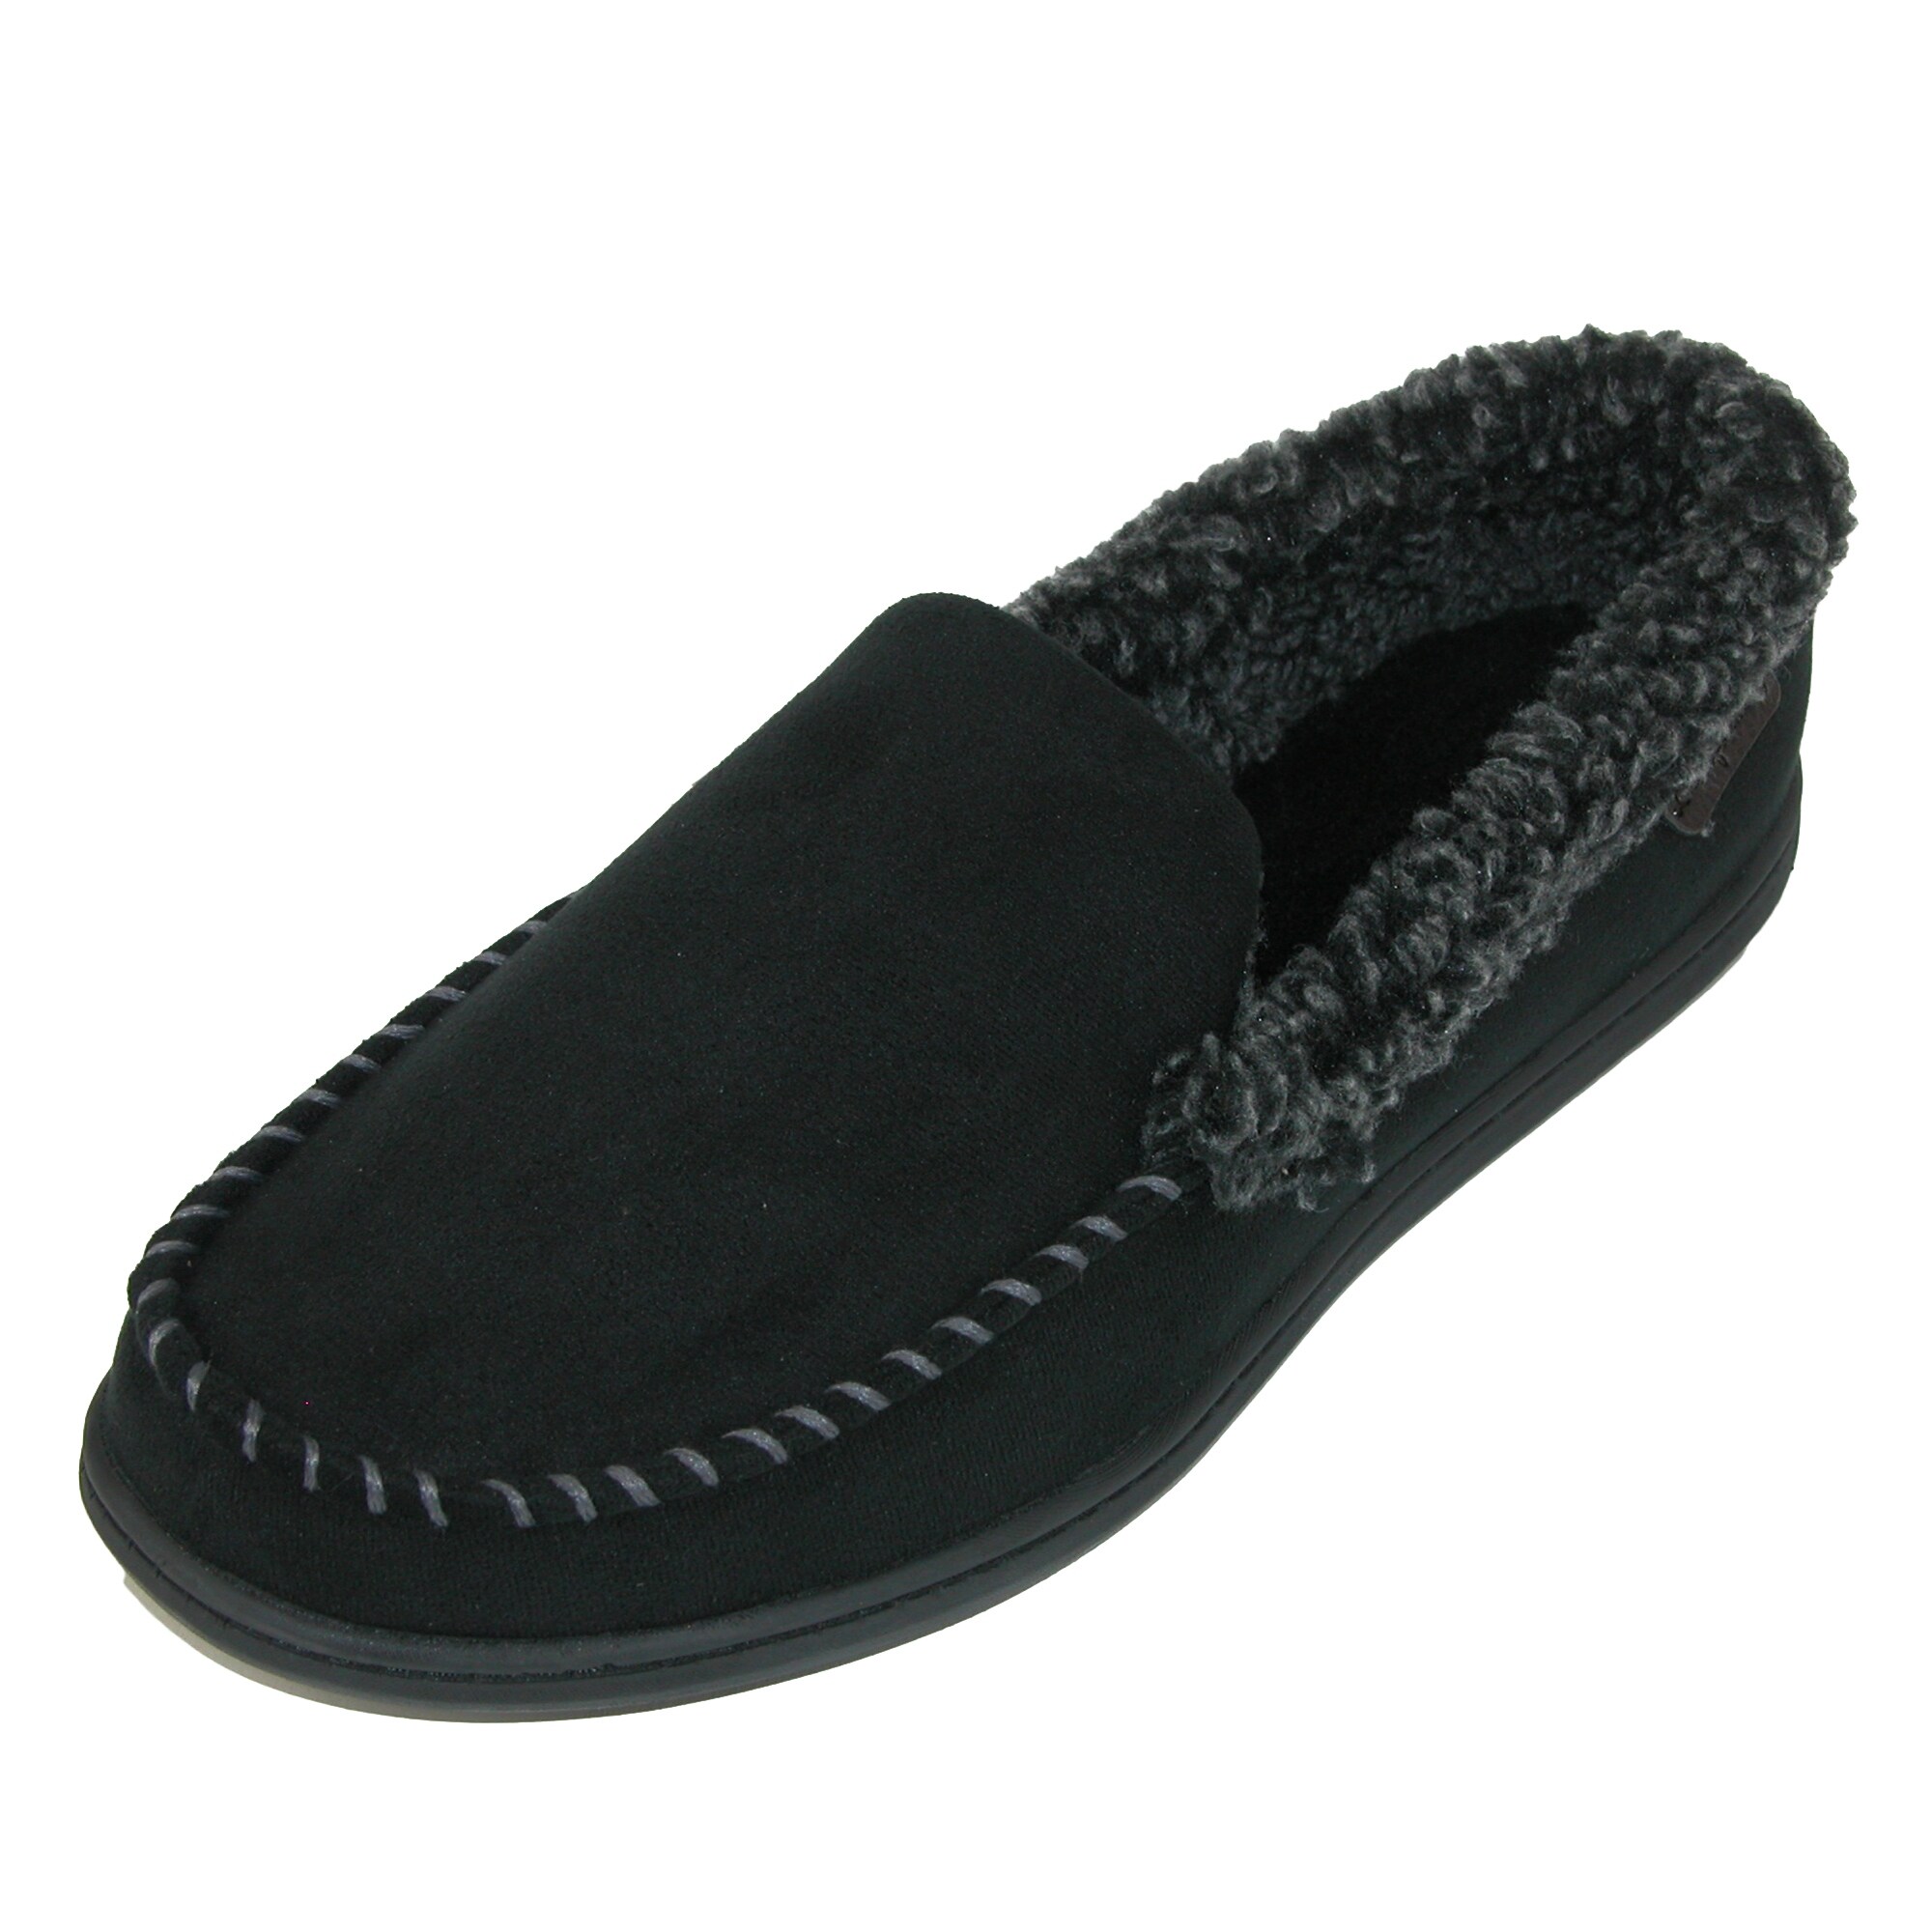 dearfoam mens slippers